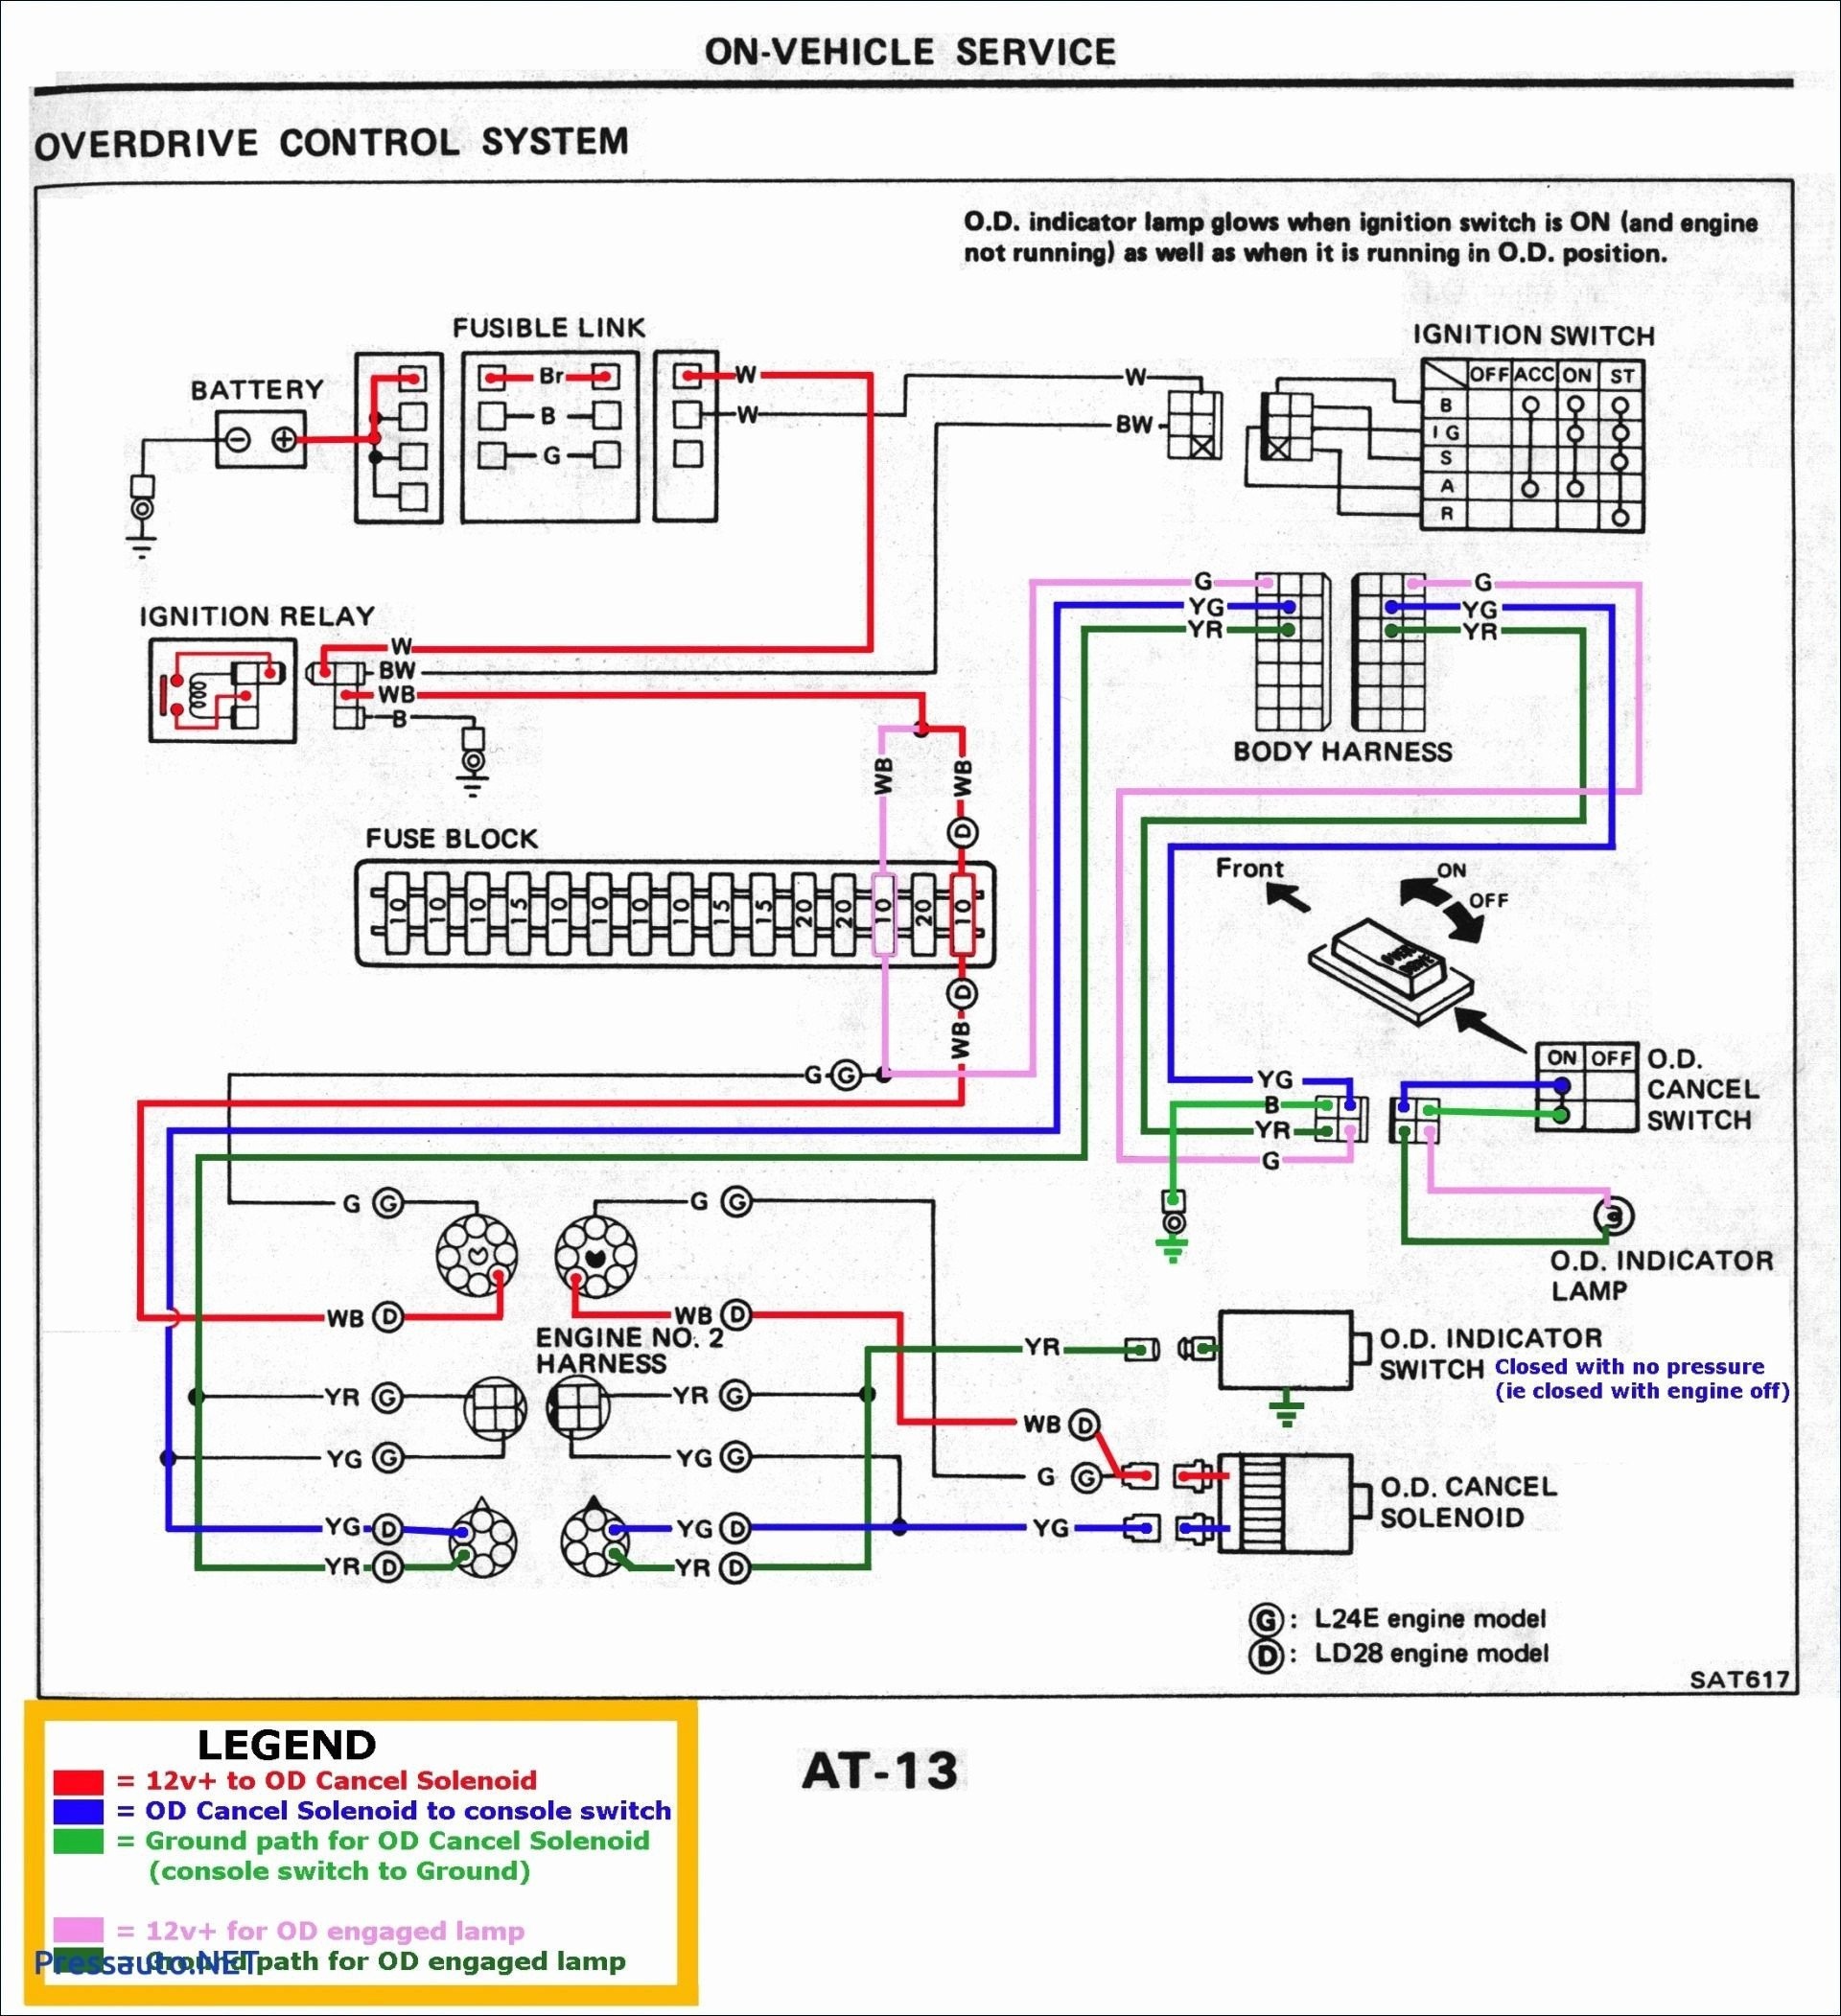 12 volt cigarette lighter socket wiring diagram valid best 12v car cigarette lighter socket wiring diagram